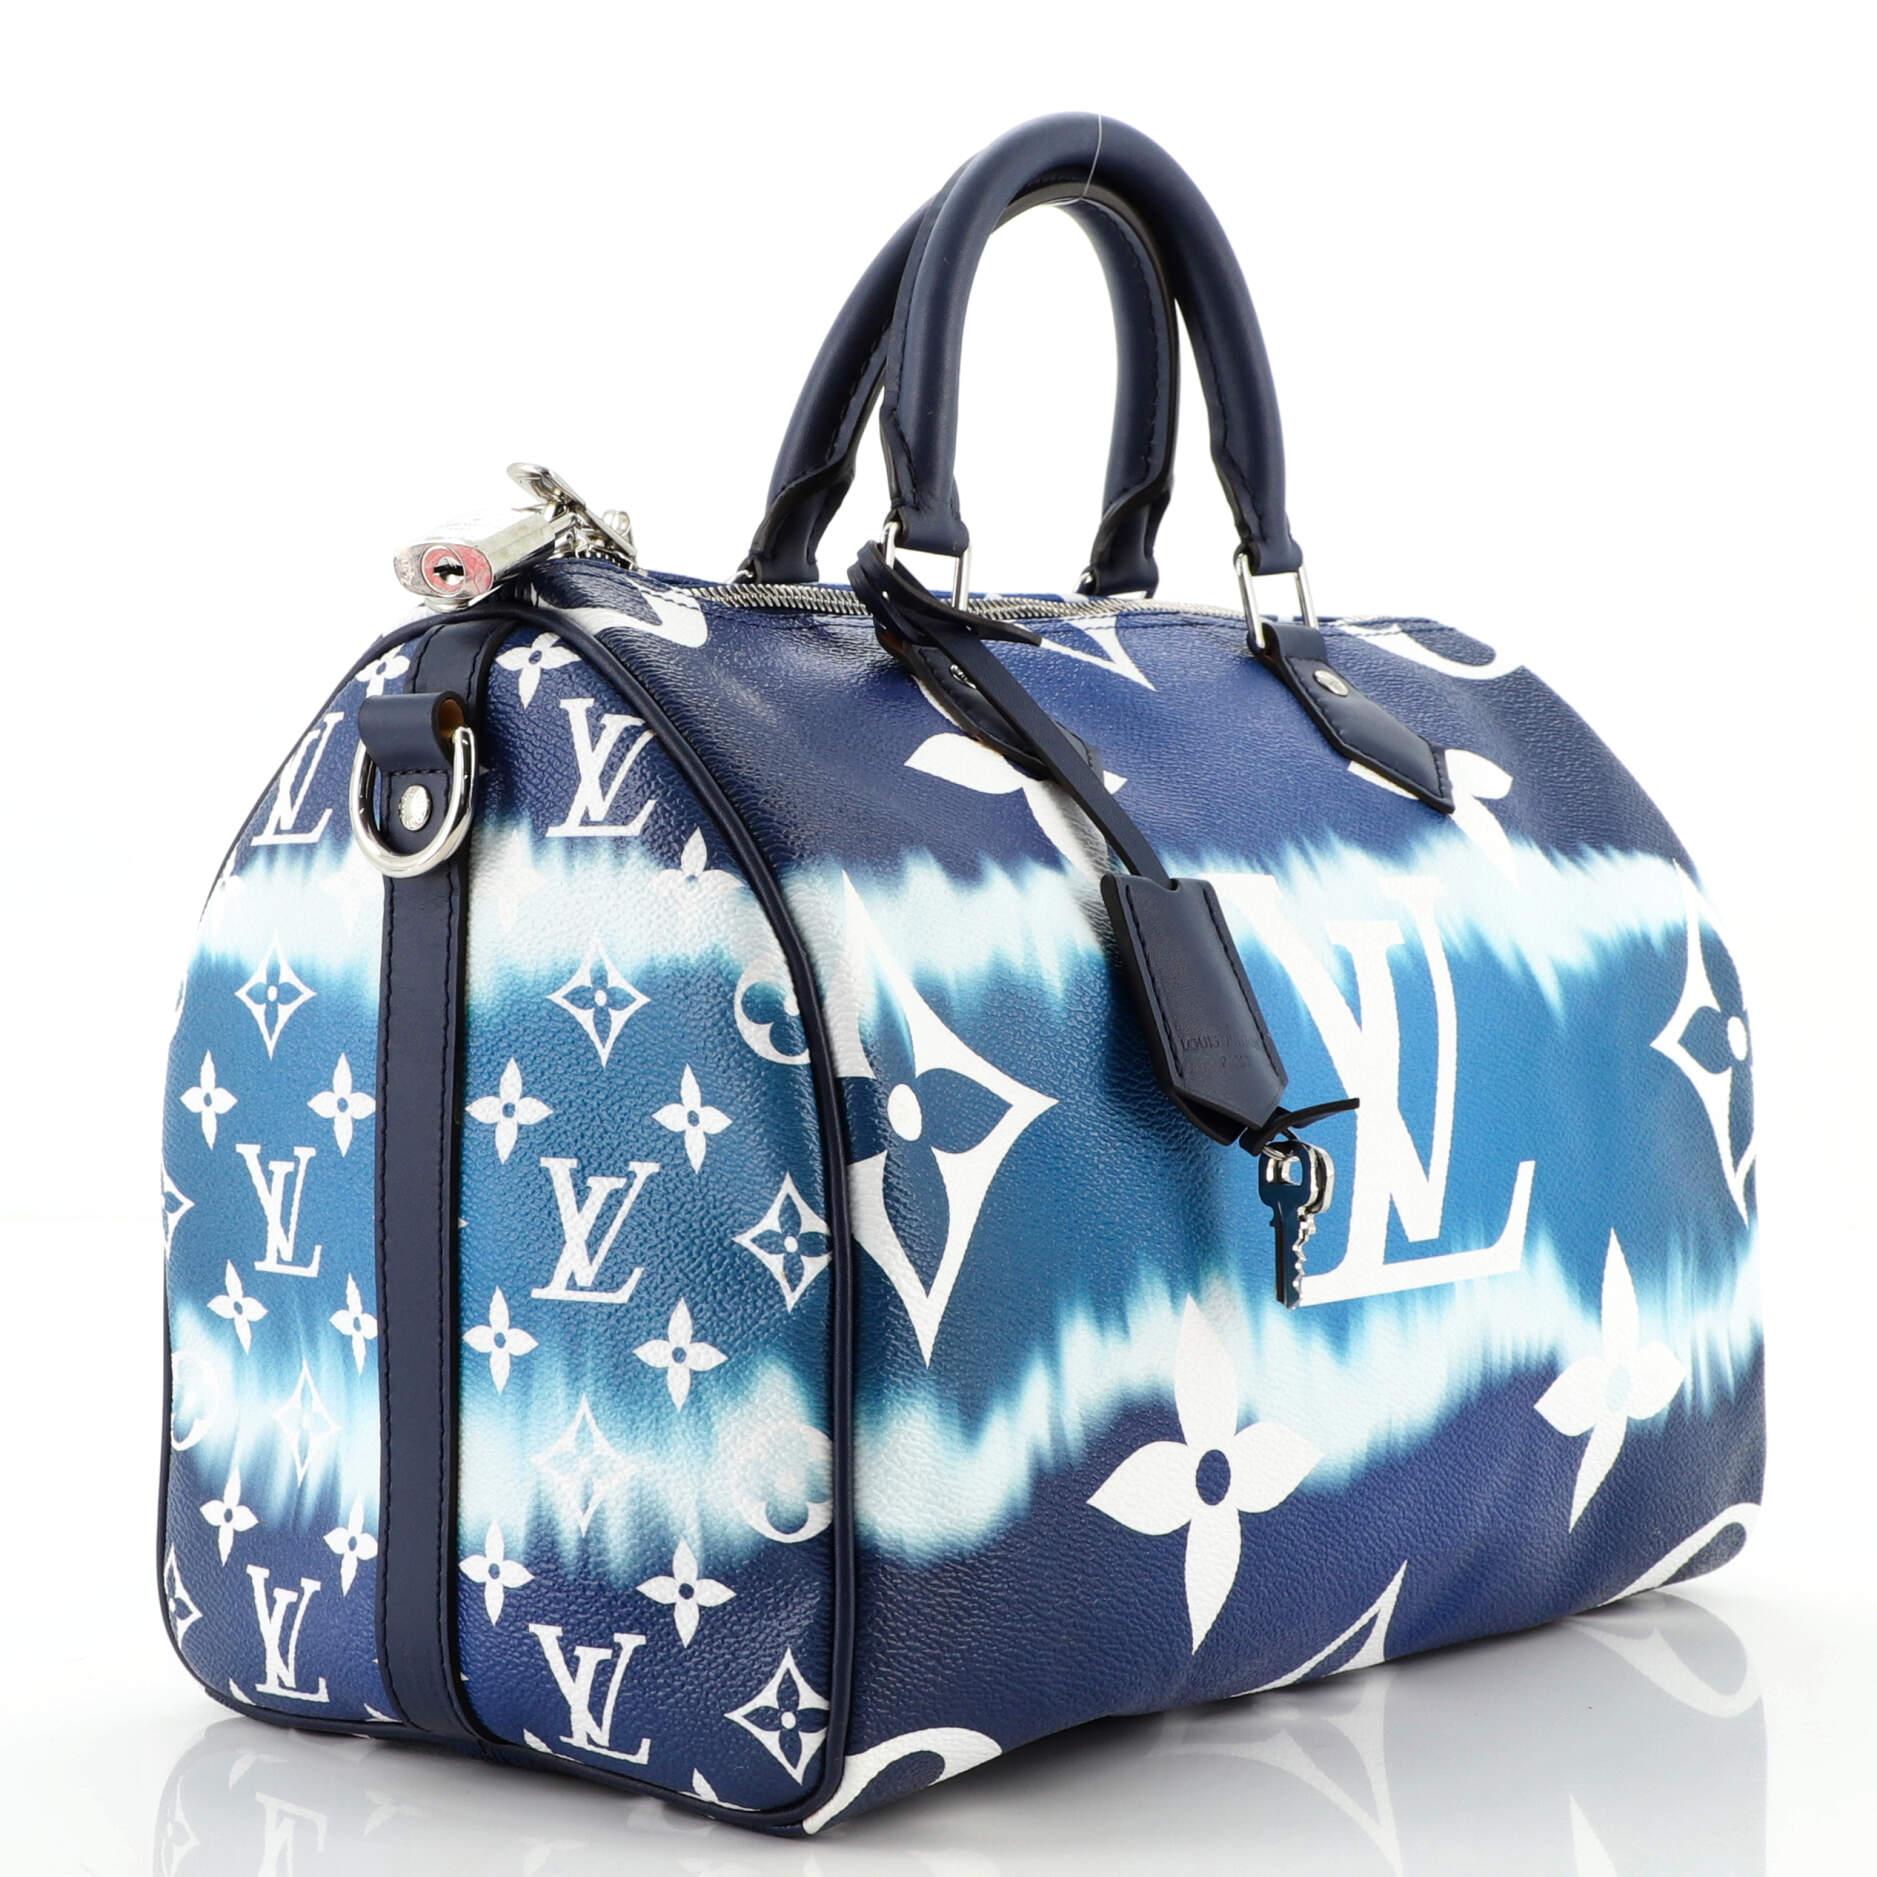 Purple Louis Vuitton Speedy Bandouliere Bag Limited Edition Escale Monogram Gian